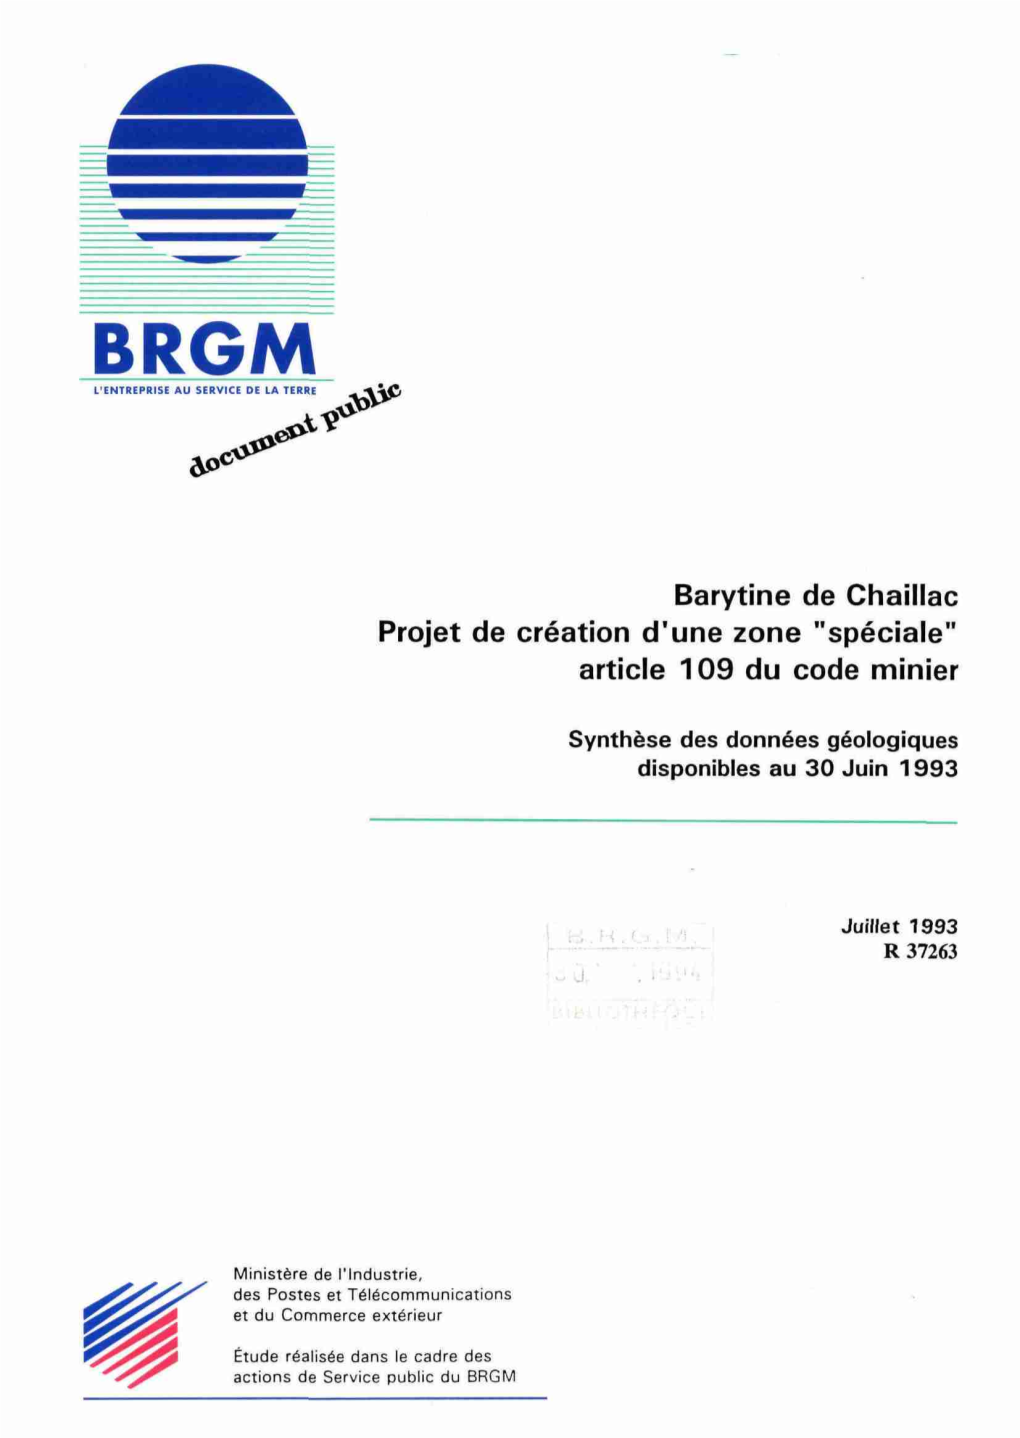 Barytine De Chaillac Projet De Création D'une Zone "Spéciale" Article 109 Du Code Minier